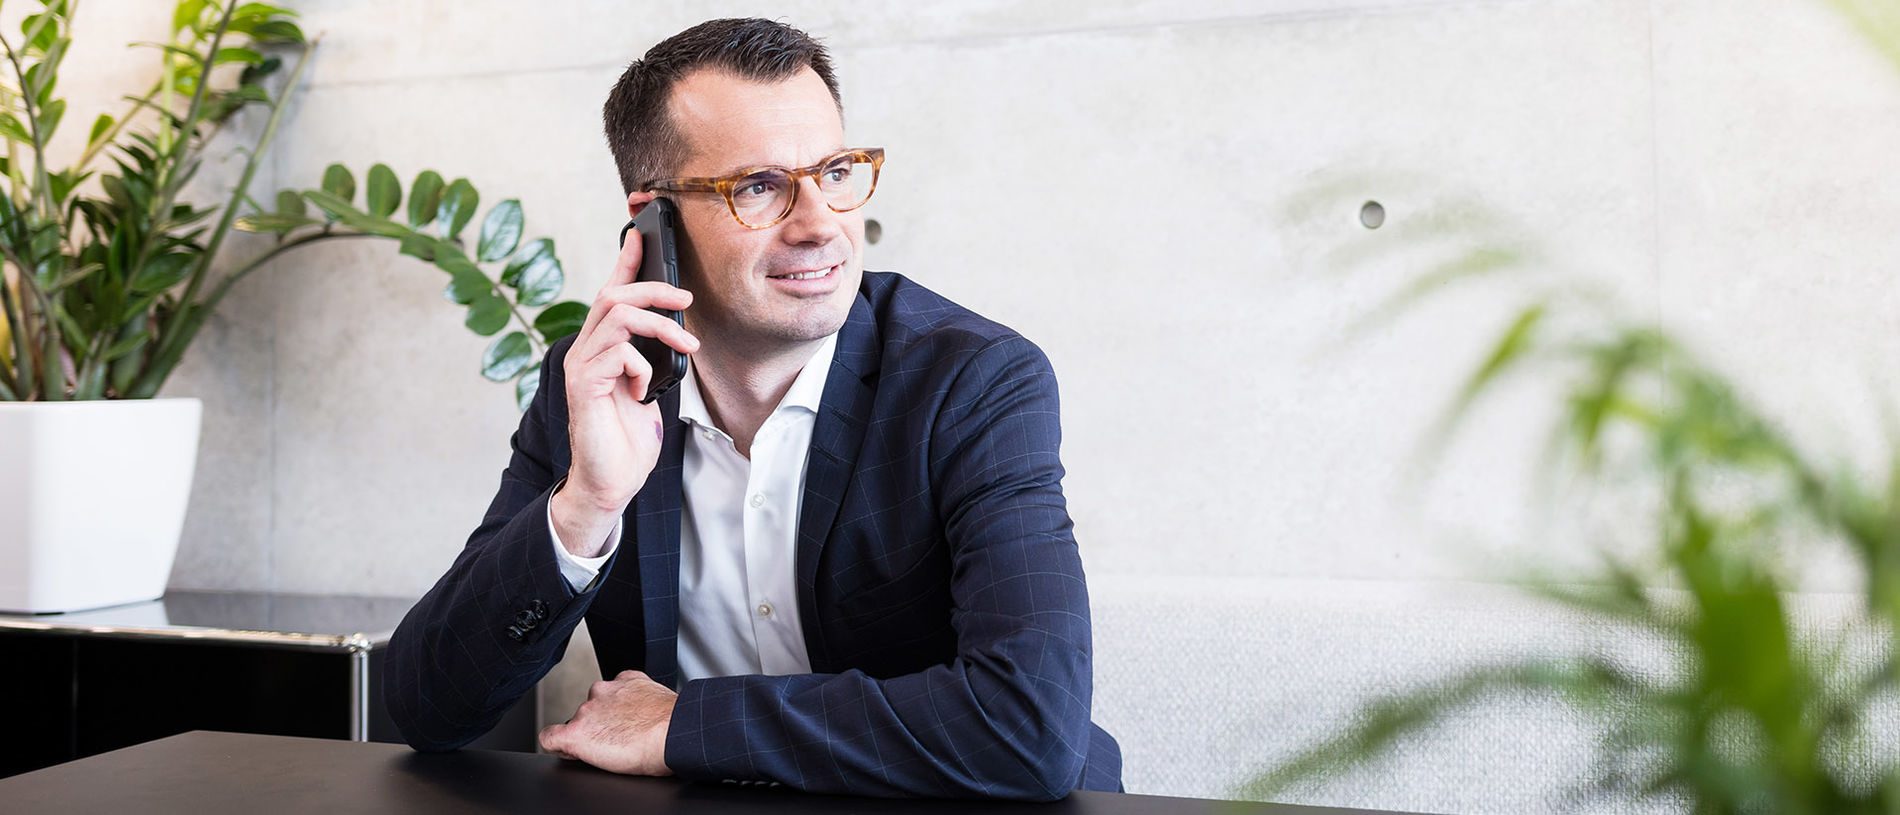 Ein Mann mit Brille sitzt an einem Tisch vor einer Zimmerpflanze und telefoniert mit dem Smartphone